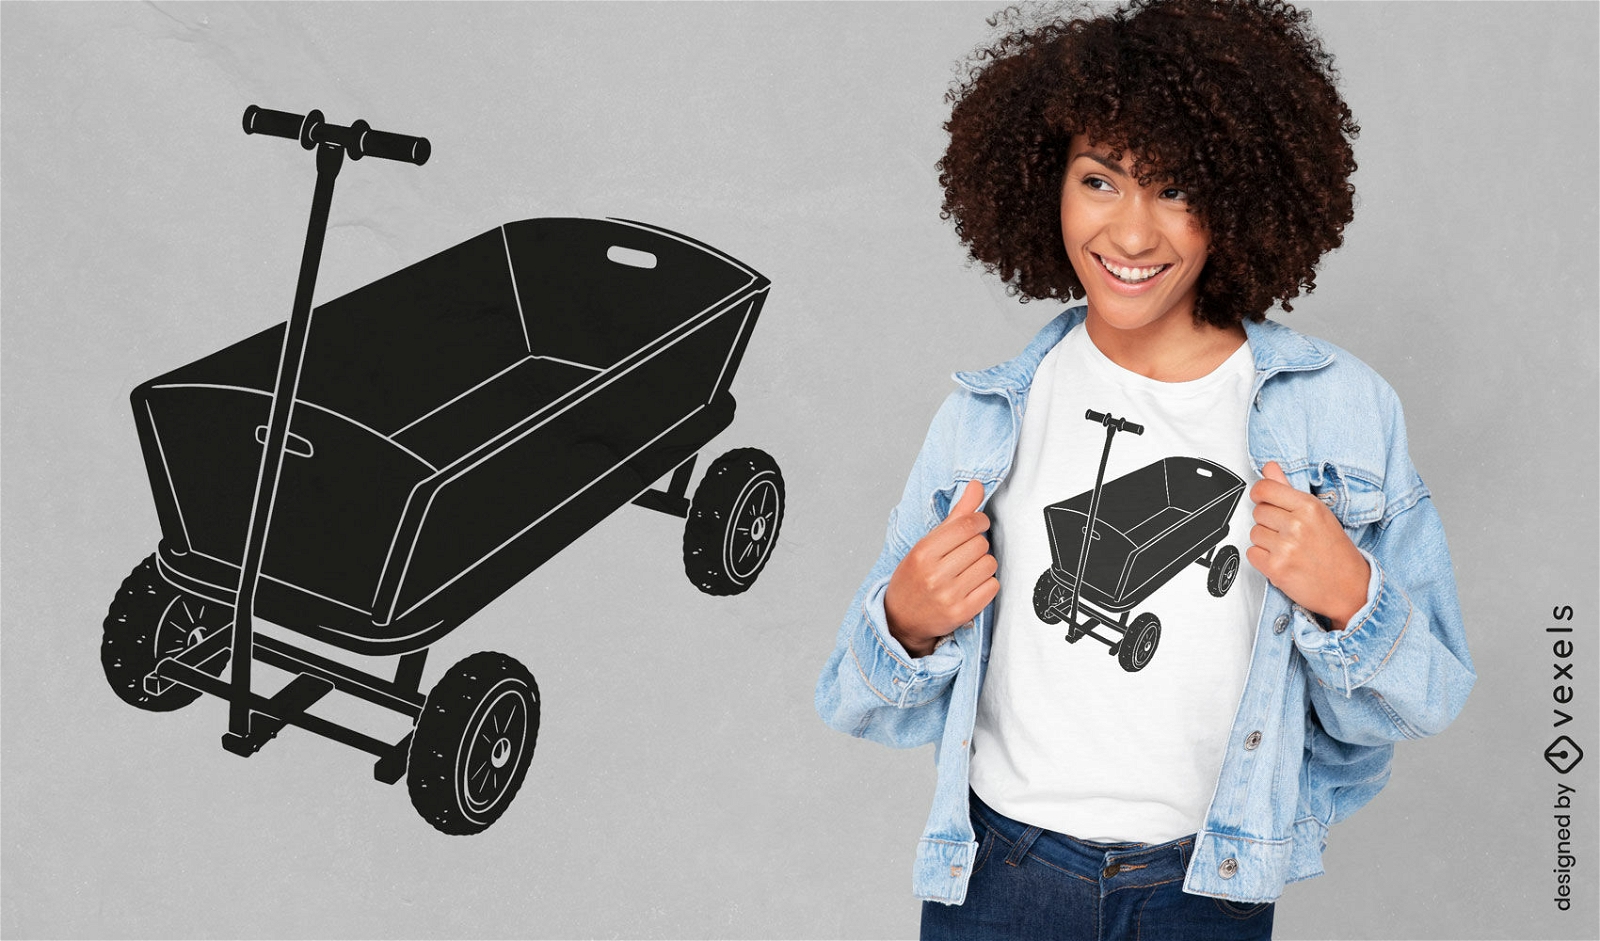 Small cart equipment t-shirt design